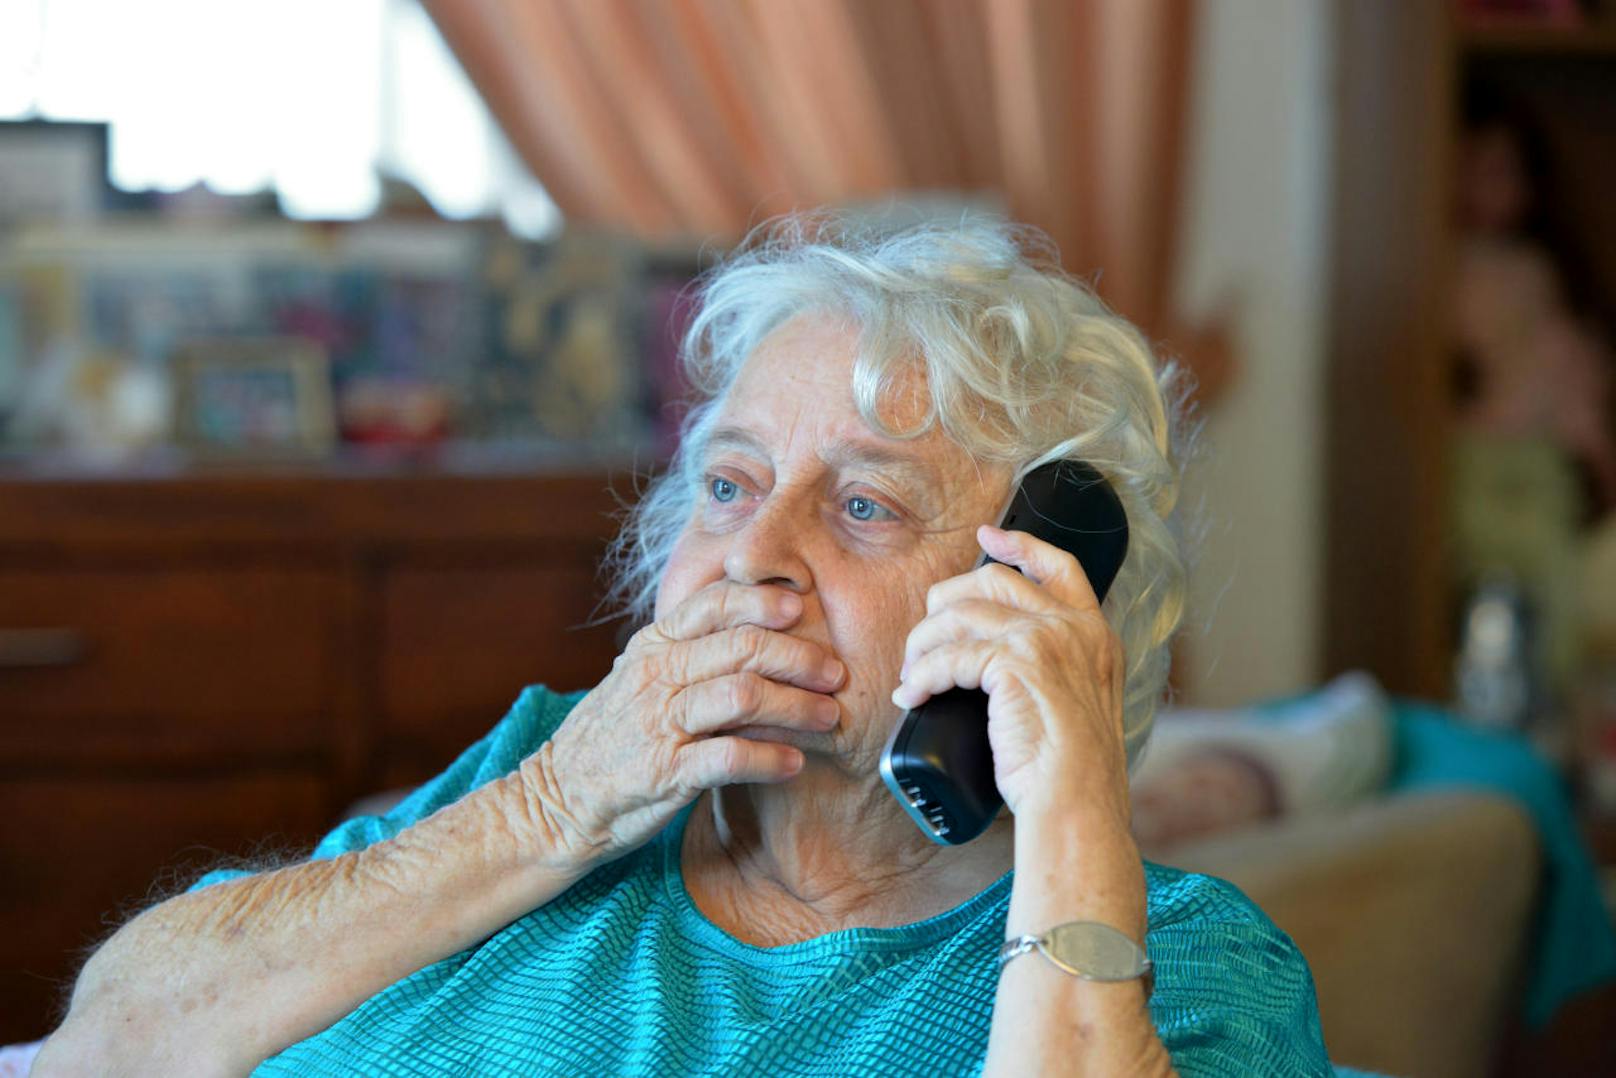 Kontaktieren Sie den "vermeintlichen" Verwandten, indem Sie ihn unter jener Telefonnummer zurückrufen, die sie sonst auch verwenden.